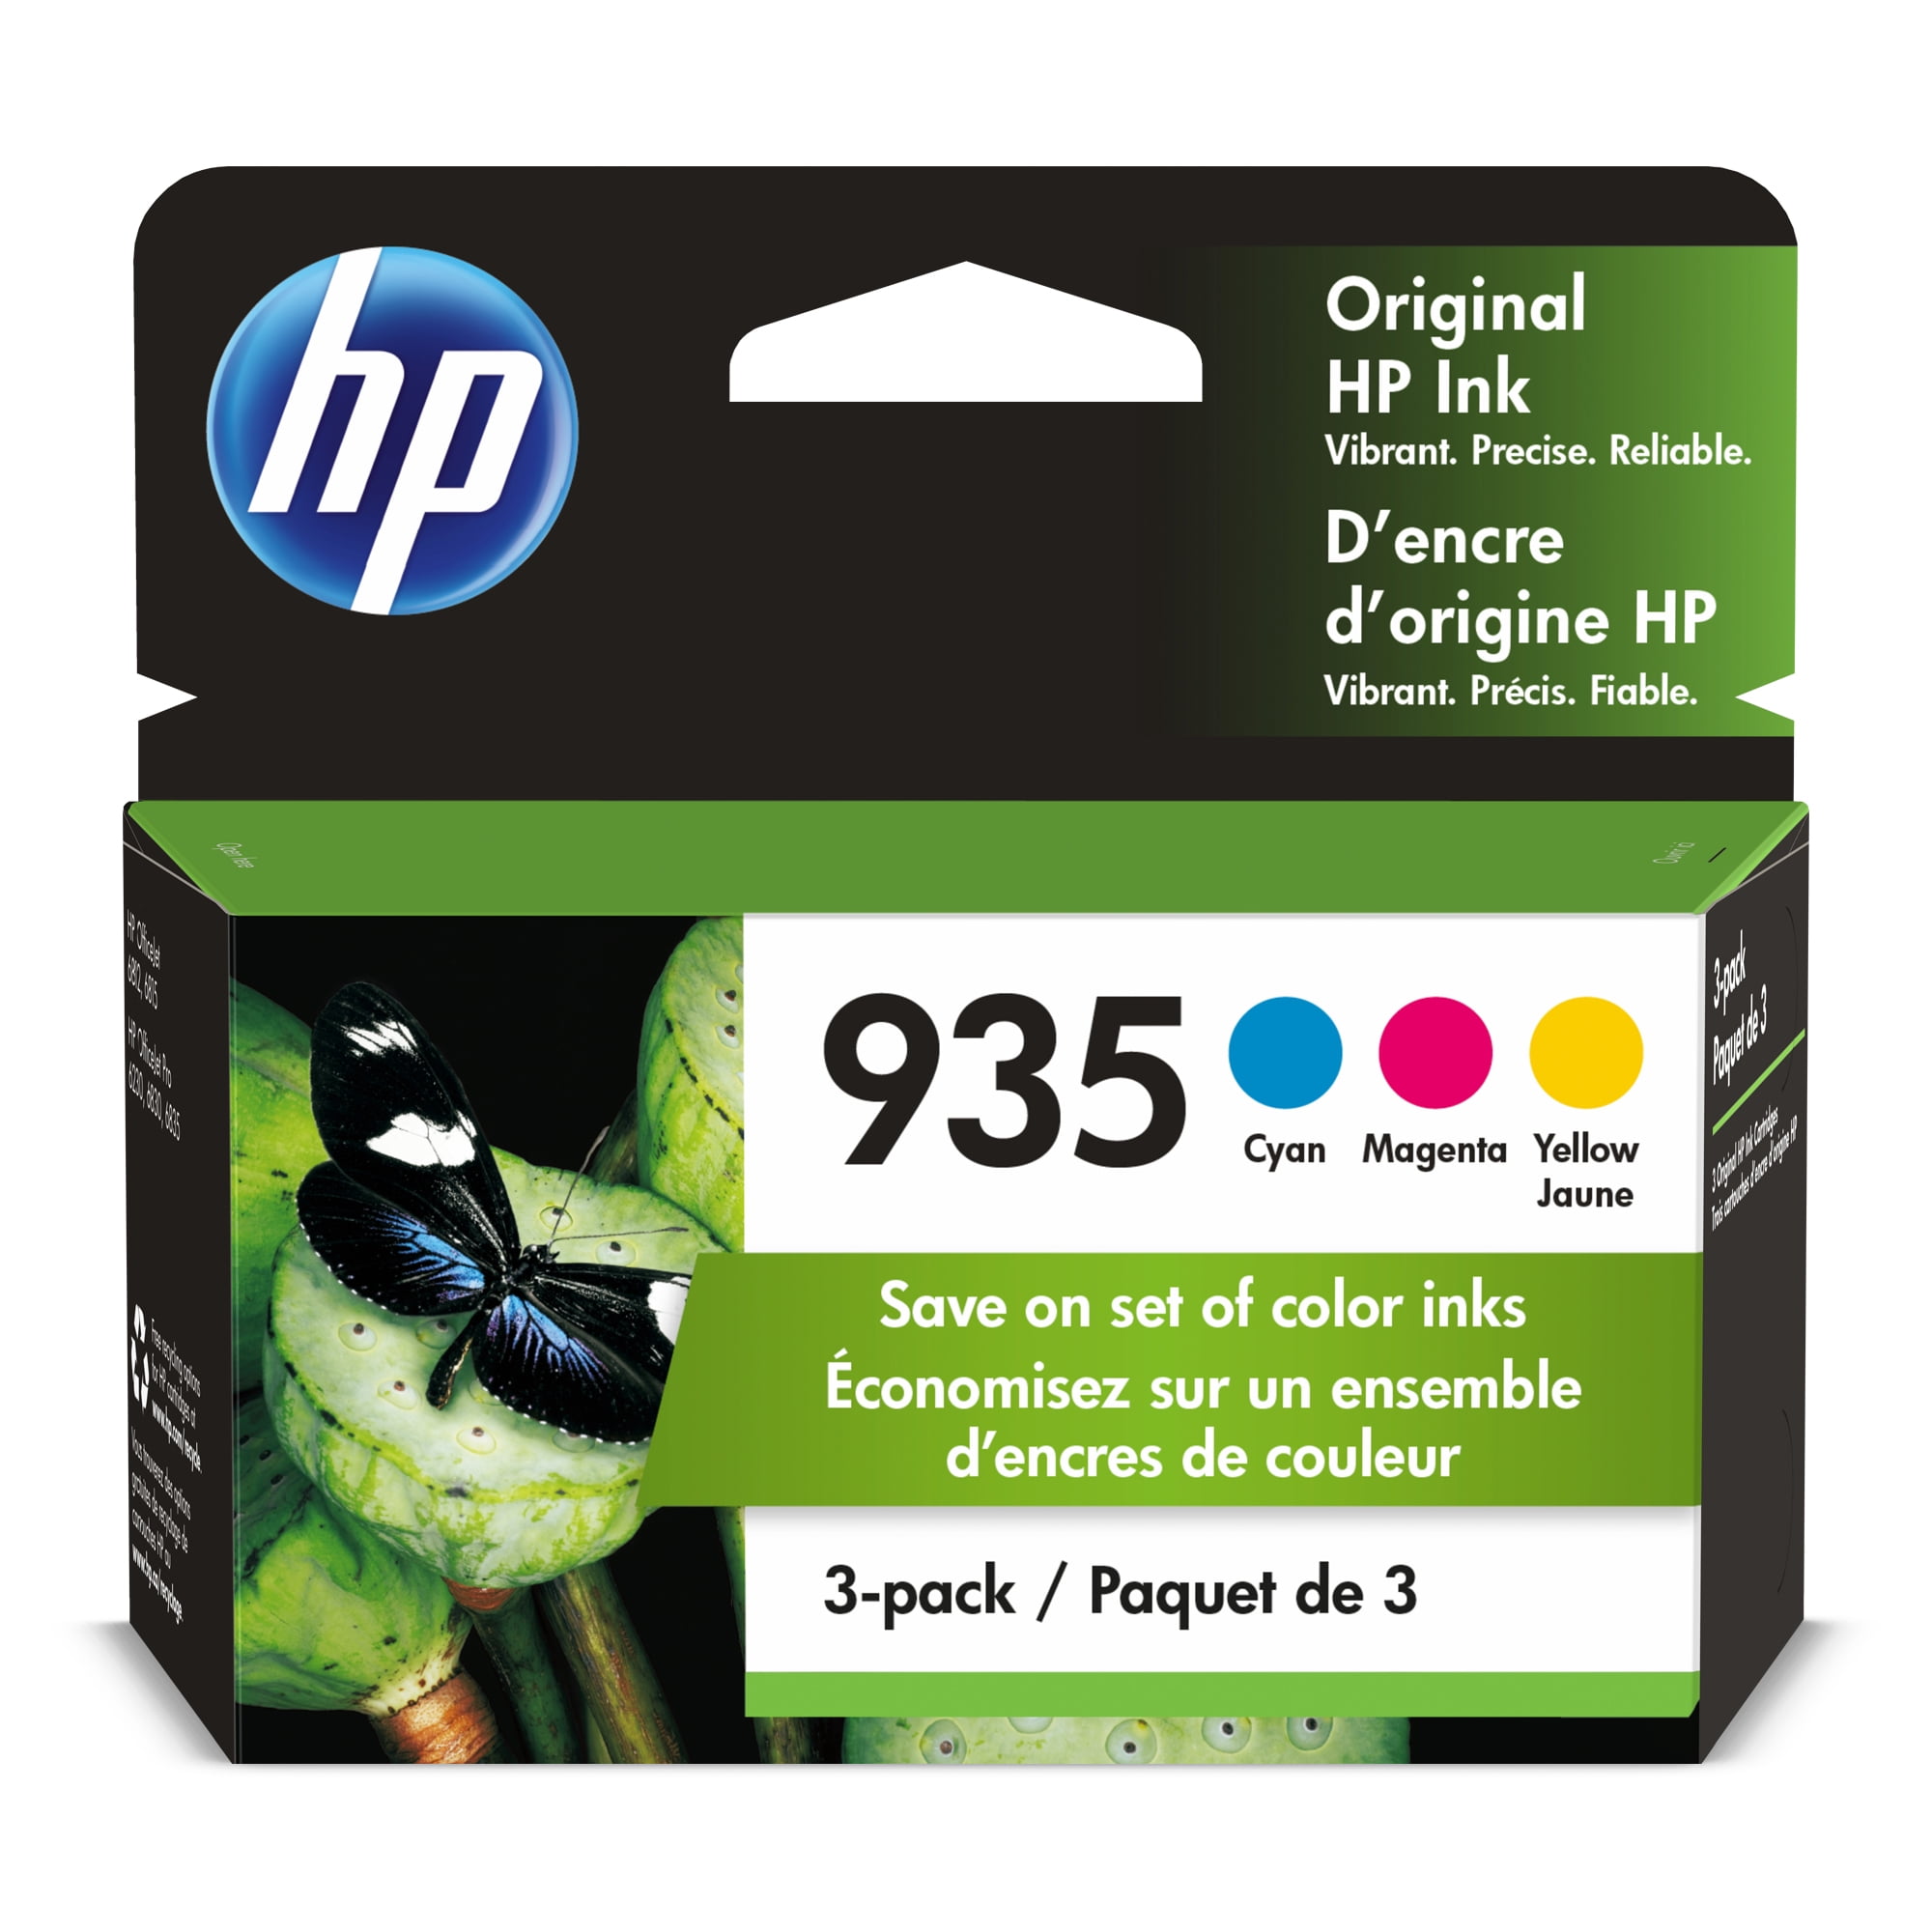 HP 934 Black/935 Cyan/Magenta/Yellow 4-pack Original Ink